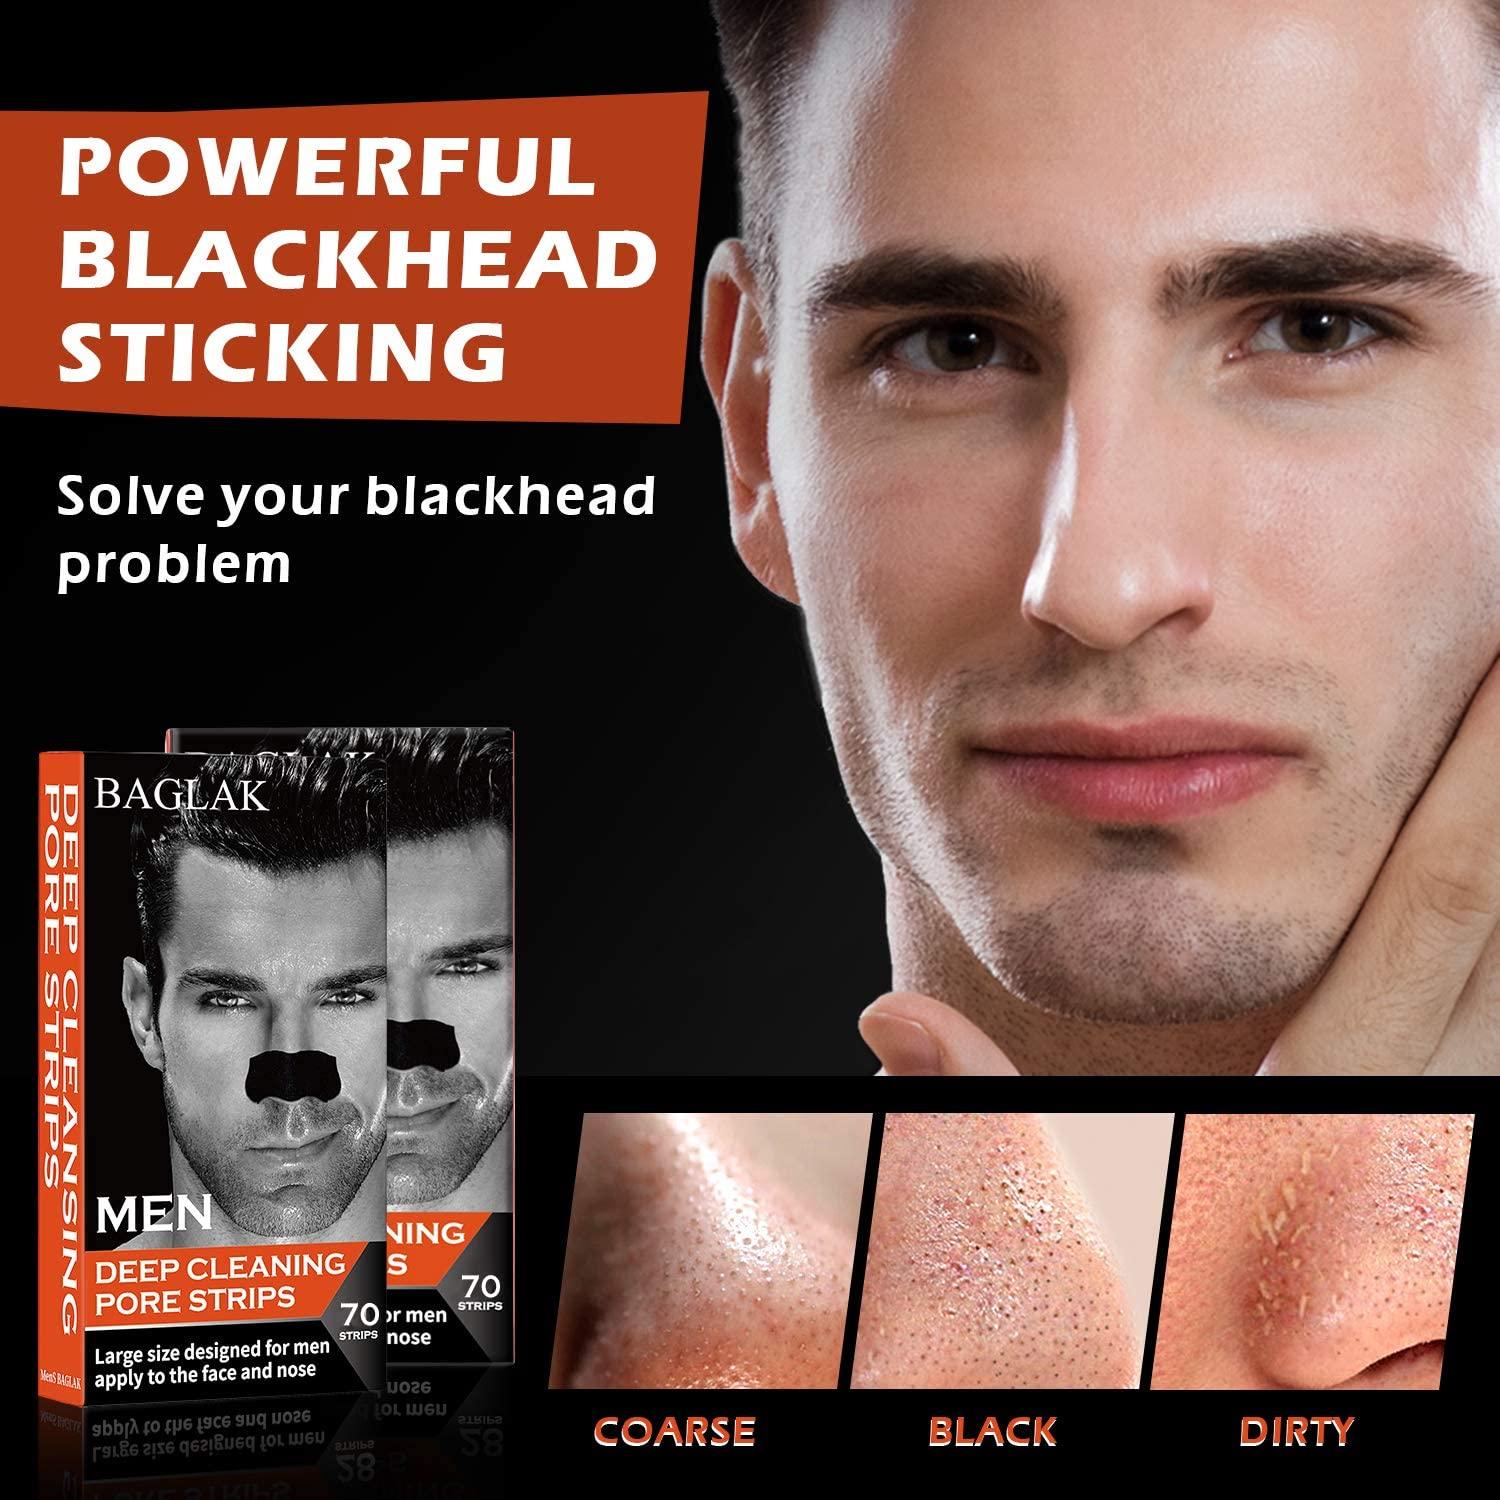 blackheads on face men